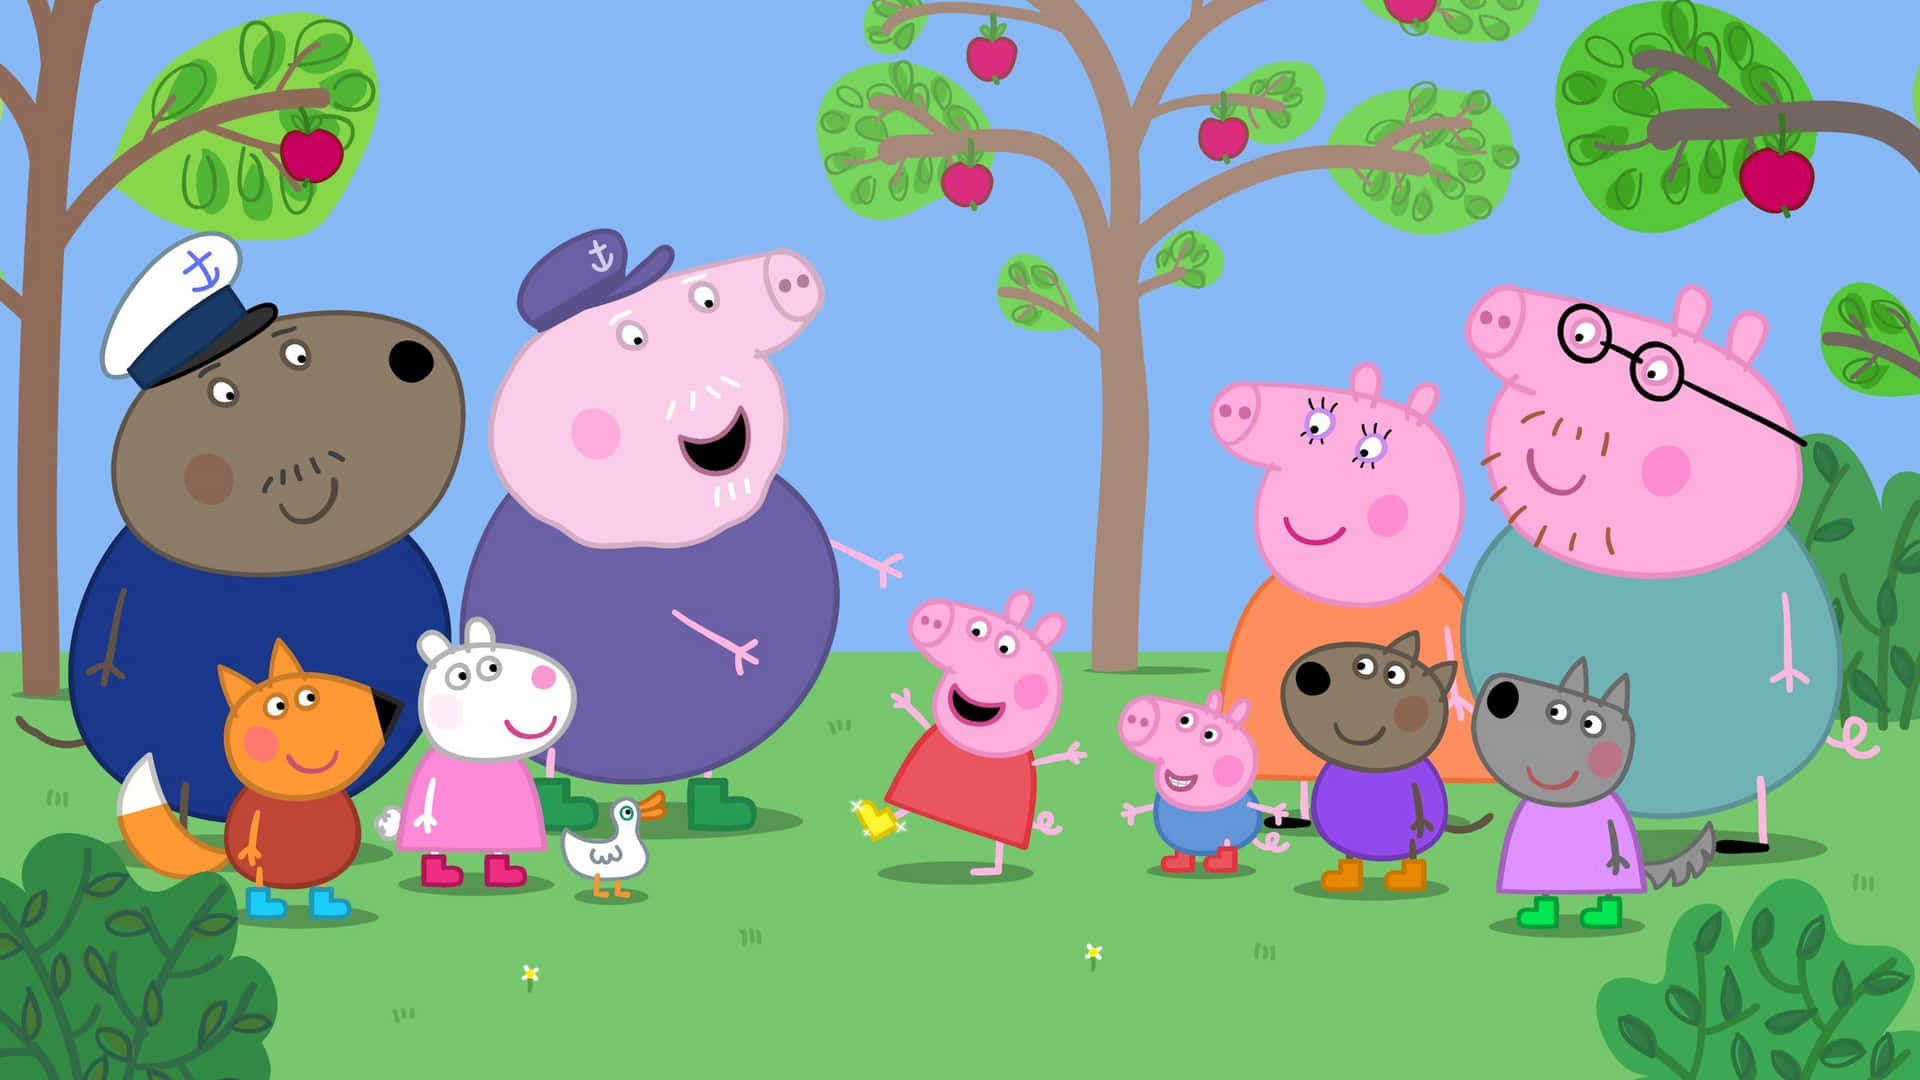 Hintergrundbildeiner Glücklichen Peppa Pig-familie